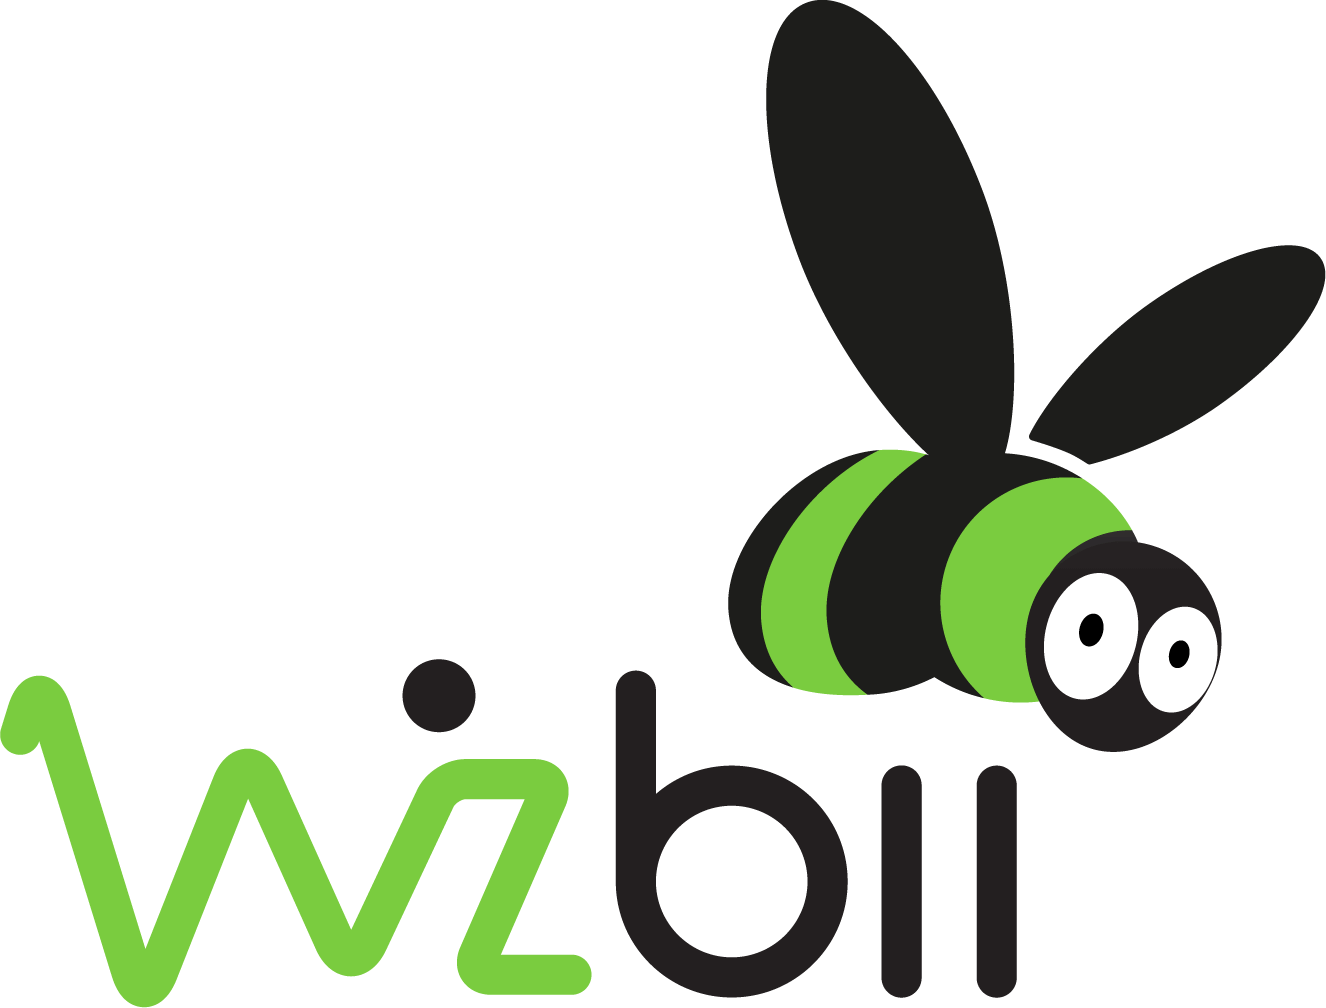 logo-wizbii